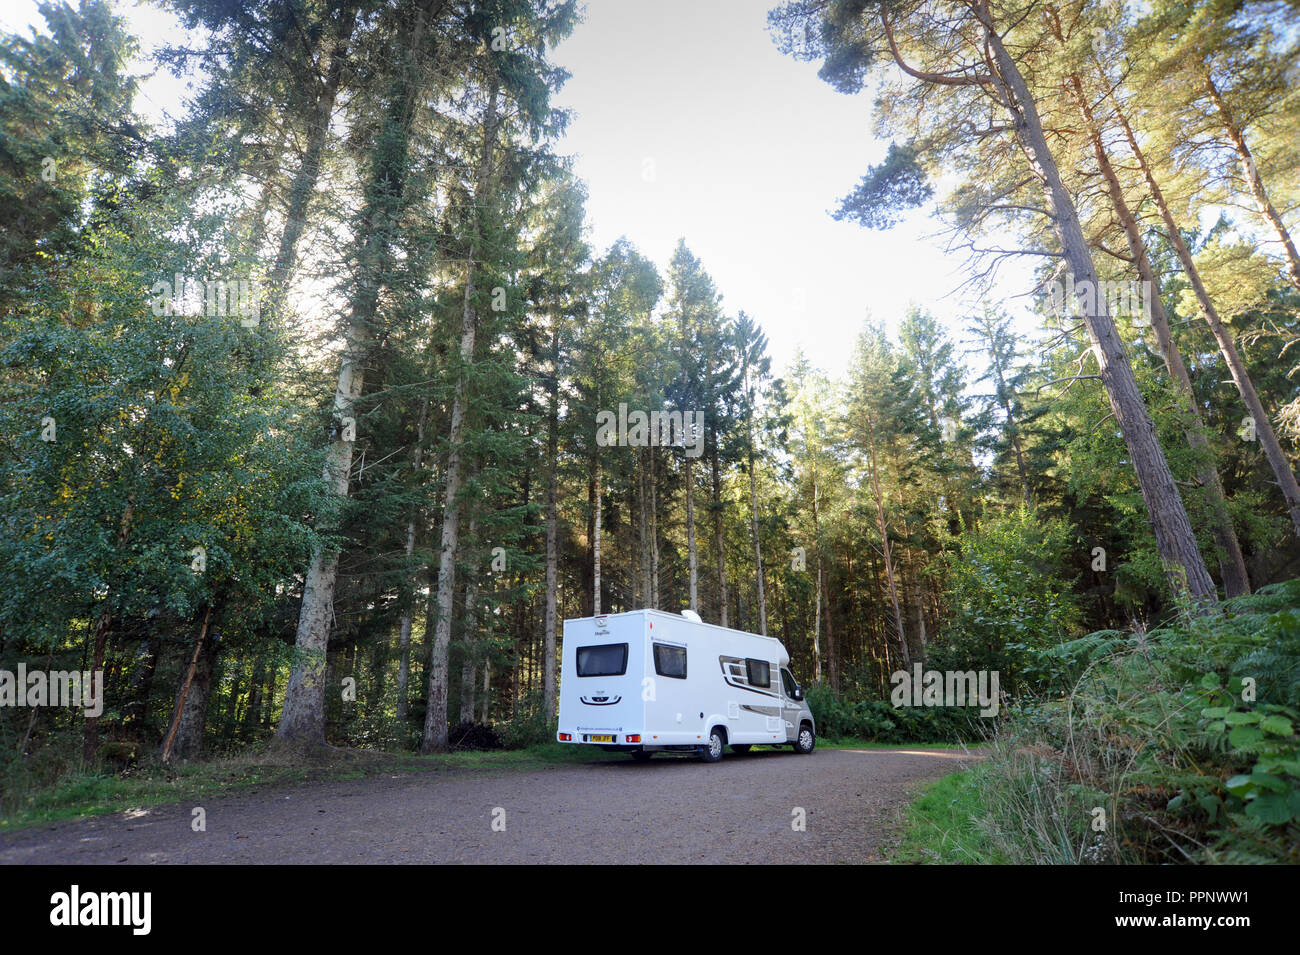 Camping stationné dans un bois SAUVAGE DE NOUVEAU CAMPING-CARS TOURING HOLIDAYS UK Banque D'Images